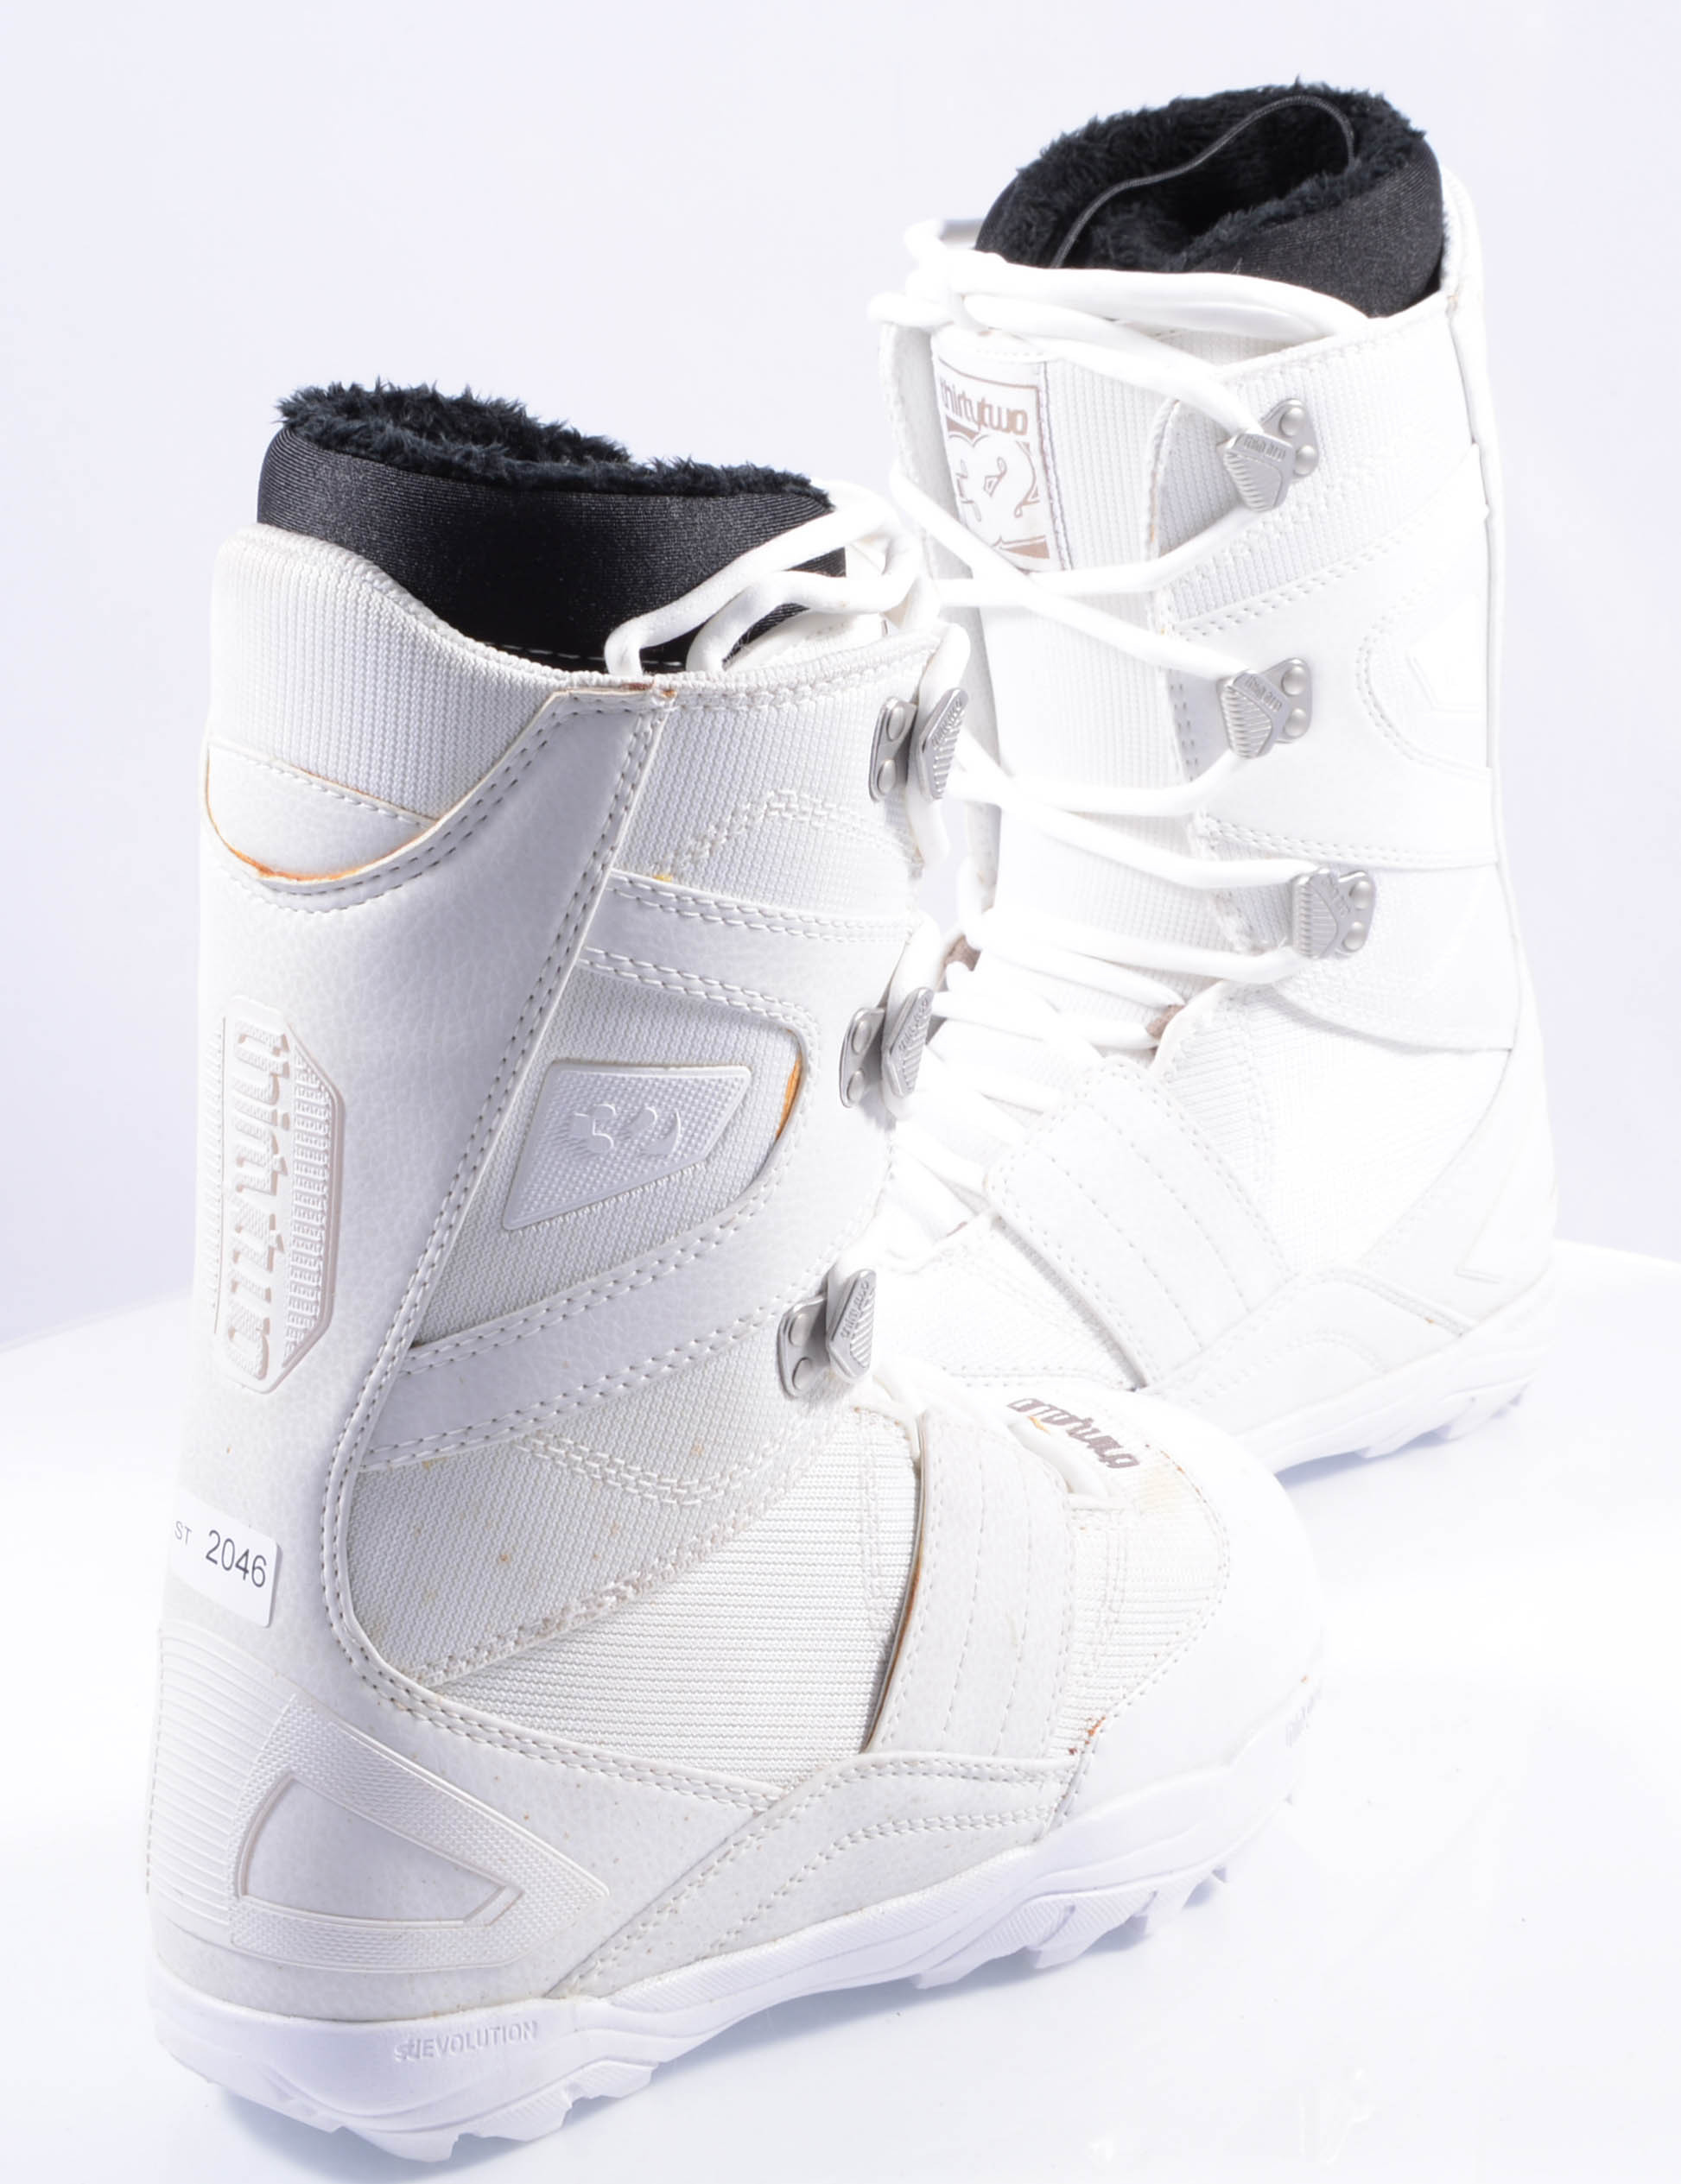 melk wit Uitgebreid kapok nieuwe snowboard schoenen THIRTYTWO WOMEN'S PROSPECT, white/beige ( NIEUWE  ) - Mardosport.be